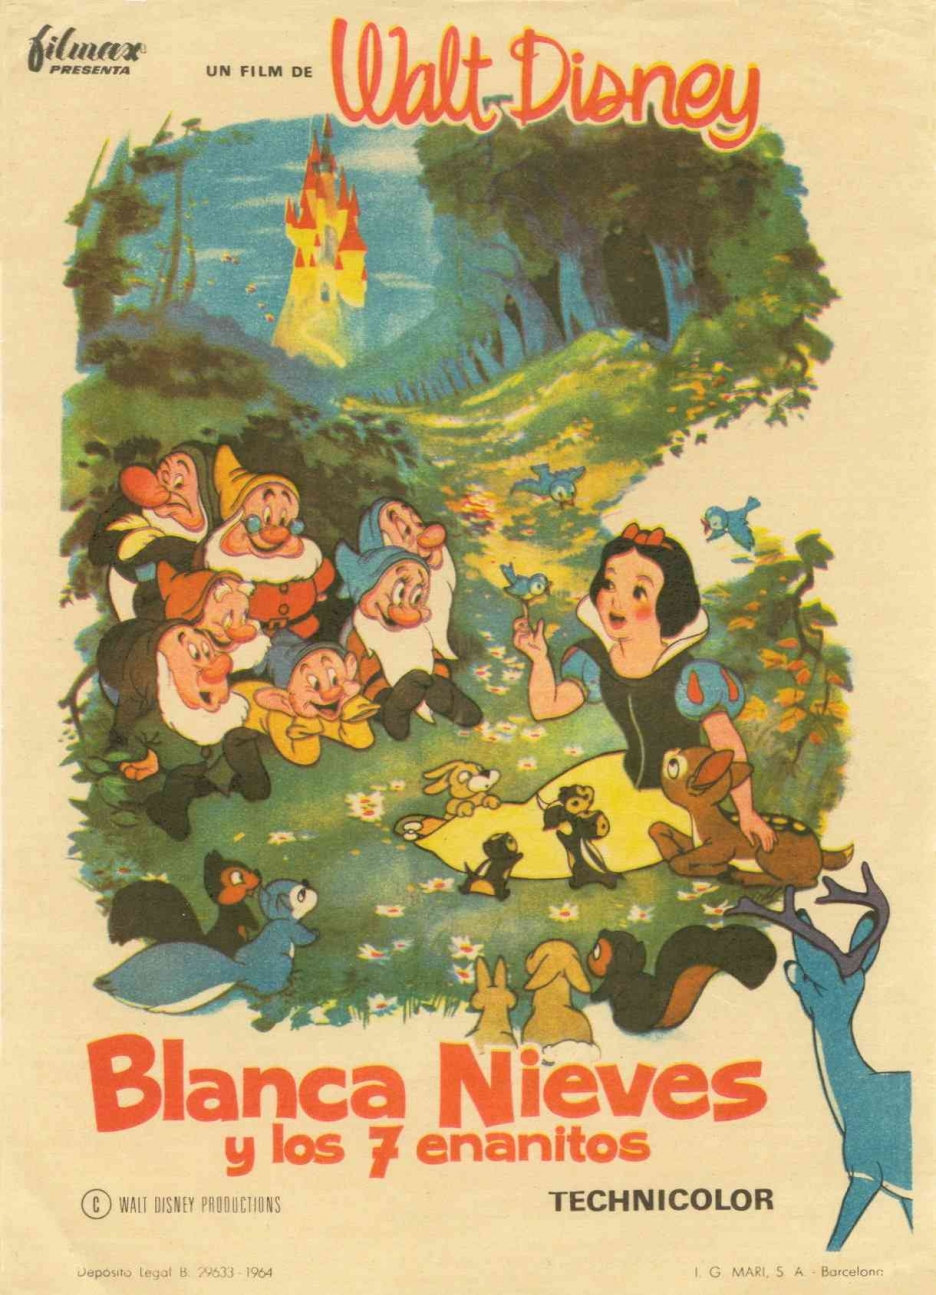 《白雪公主》(1937)是迪士尼首部经典动画长片,也是美国电影史上第一